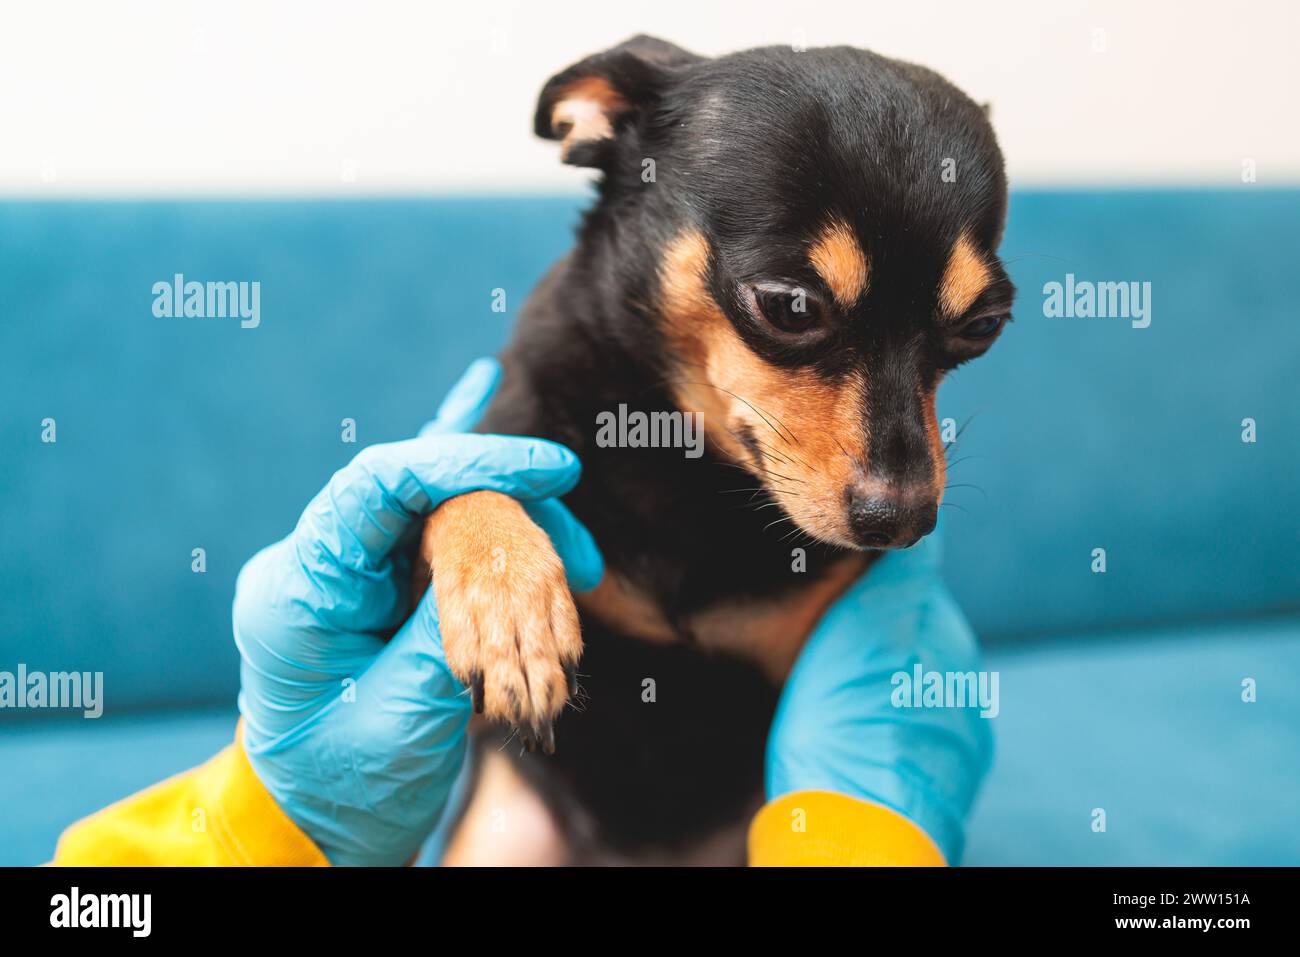 Verfahren zum Schneiden der Klauennägel eines kleinen Hunderassen mit einem Nagelschneider, Tierarzt mit kleinem schwarzen Hund, Nahaufnahme des Hundes Stockfoto